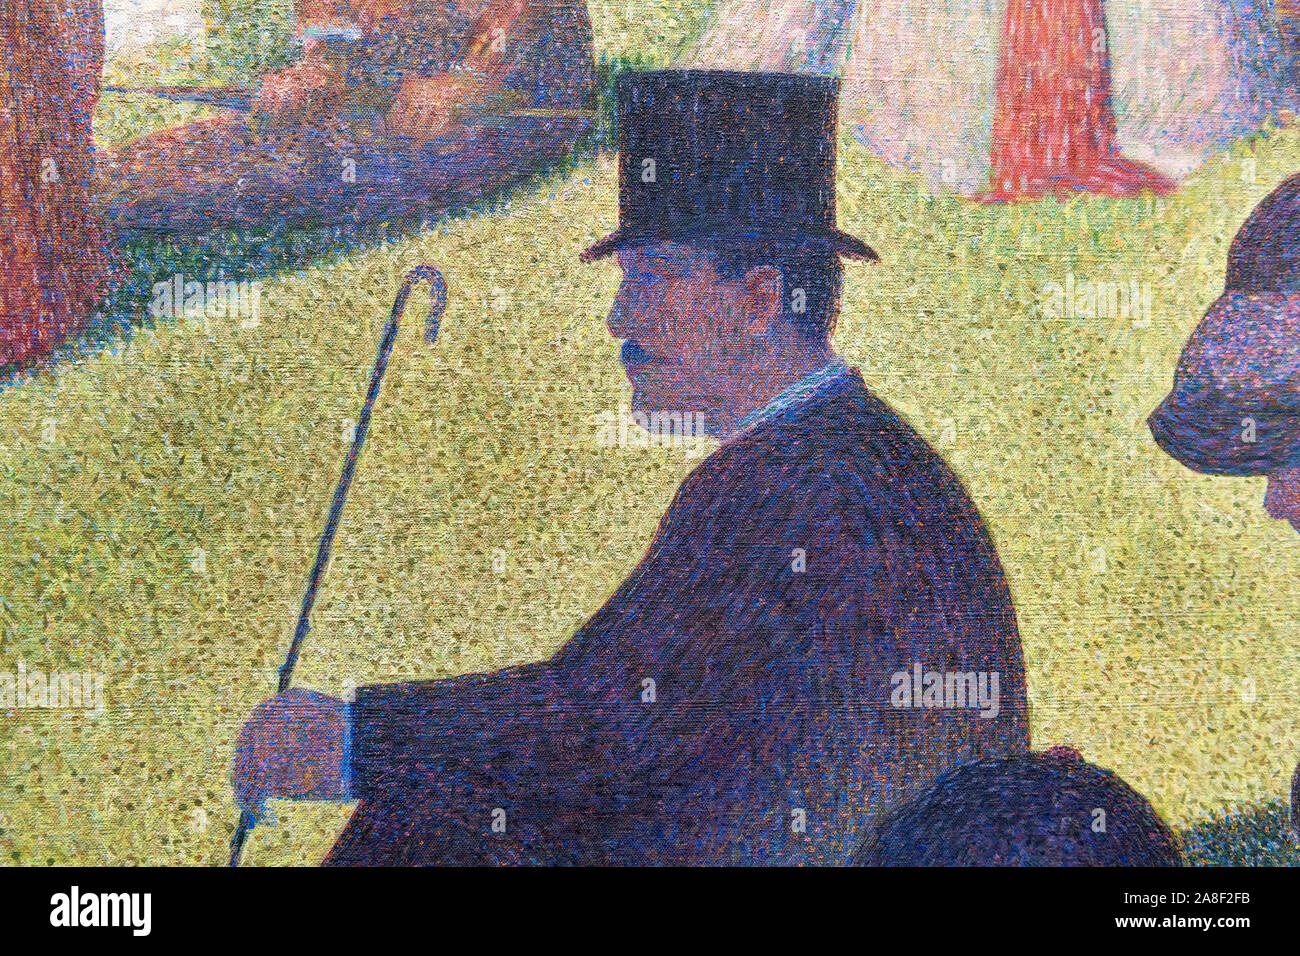 Detalle de la pintura "un domingo en la Grande Jatte" por Georges Seurat mostrando la técnica puntillista. Foto de stock